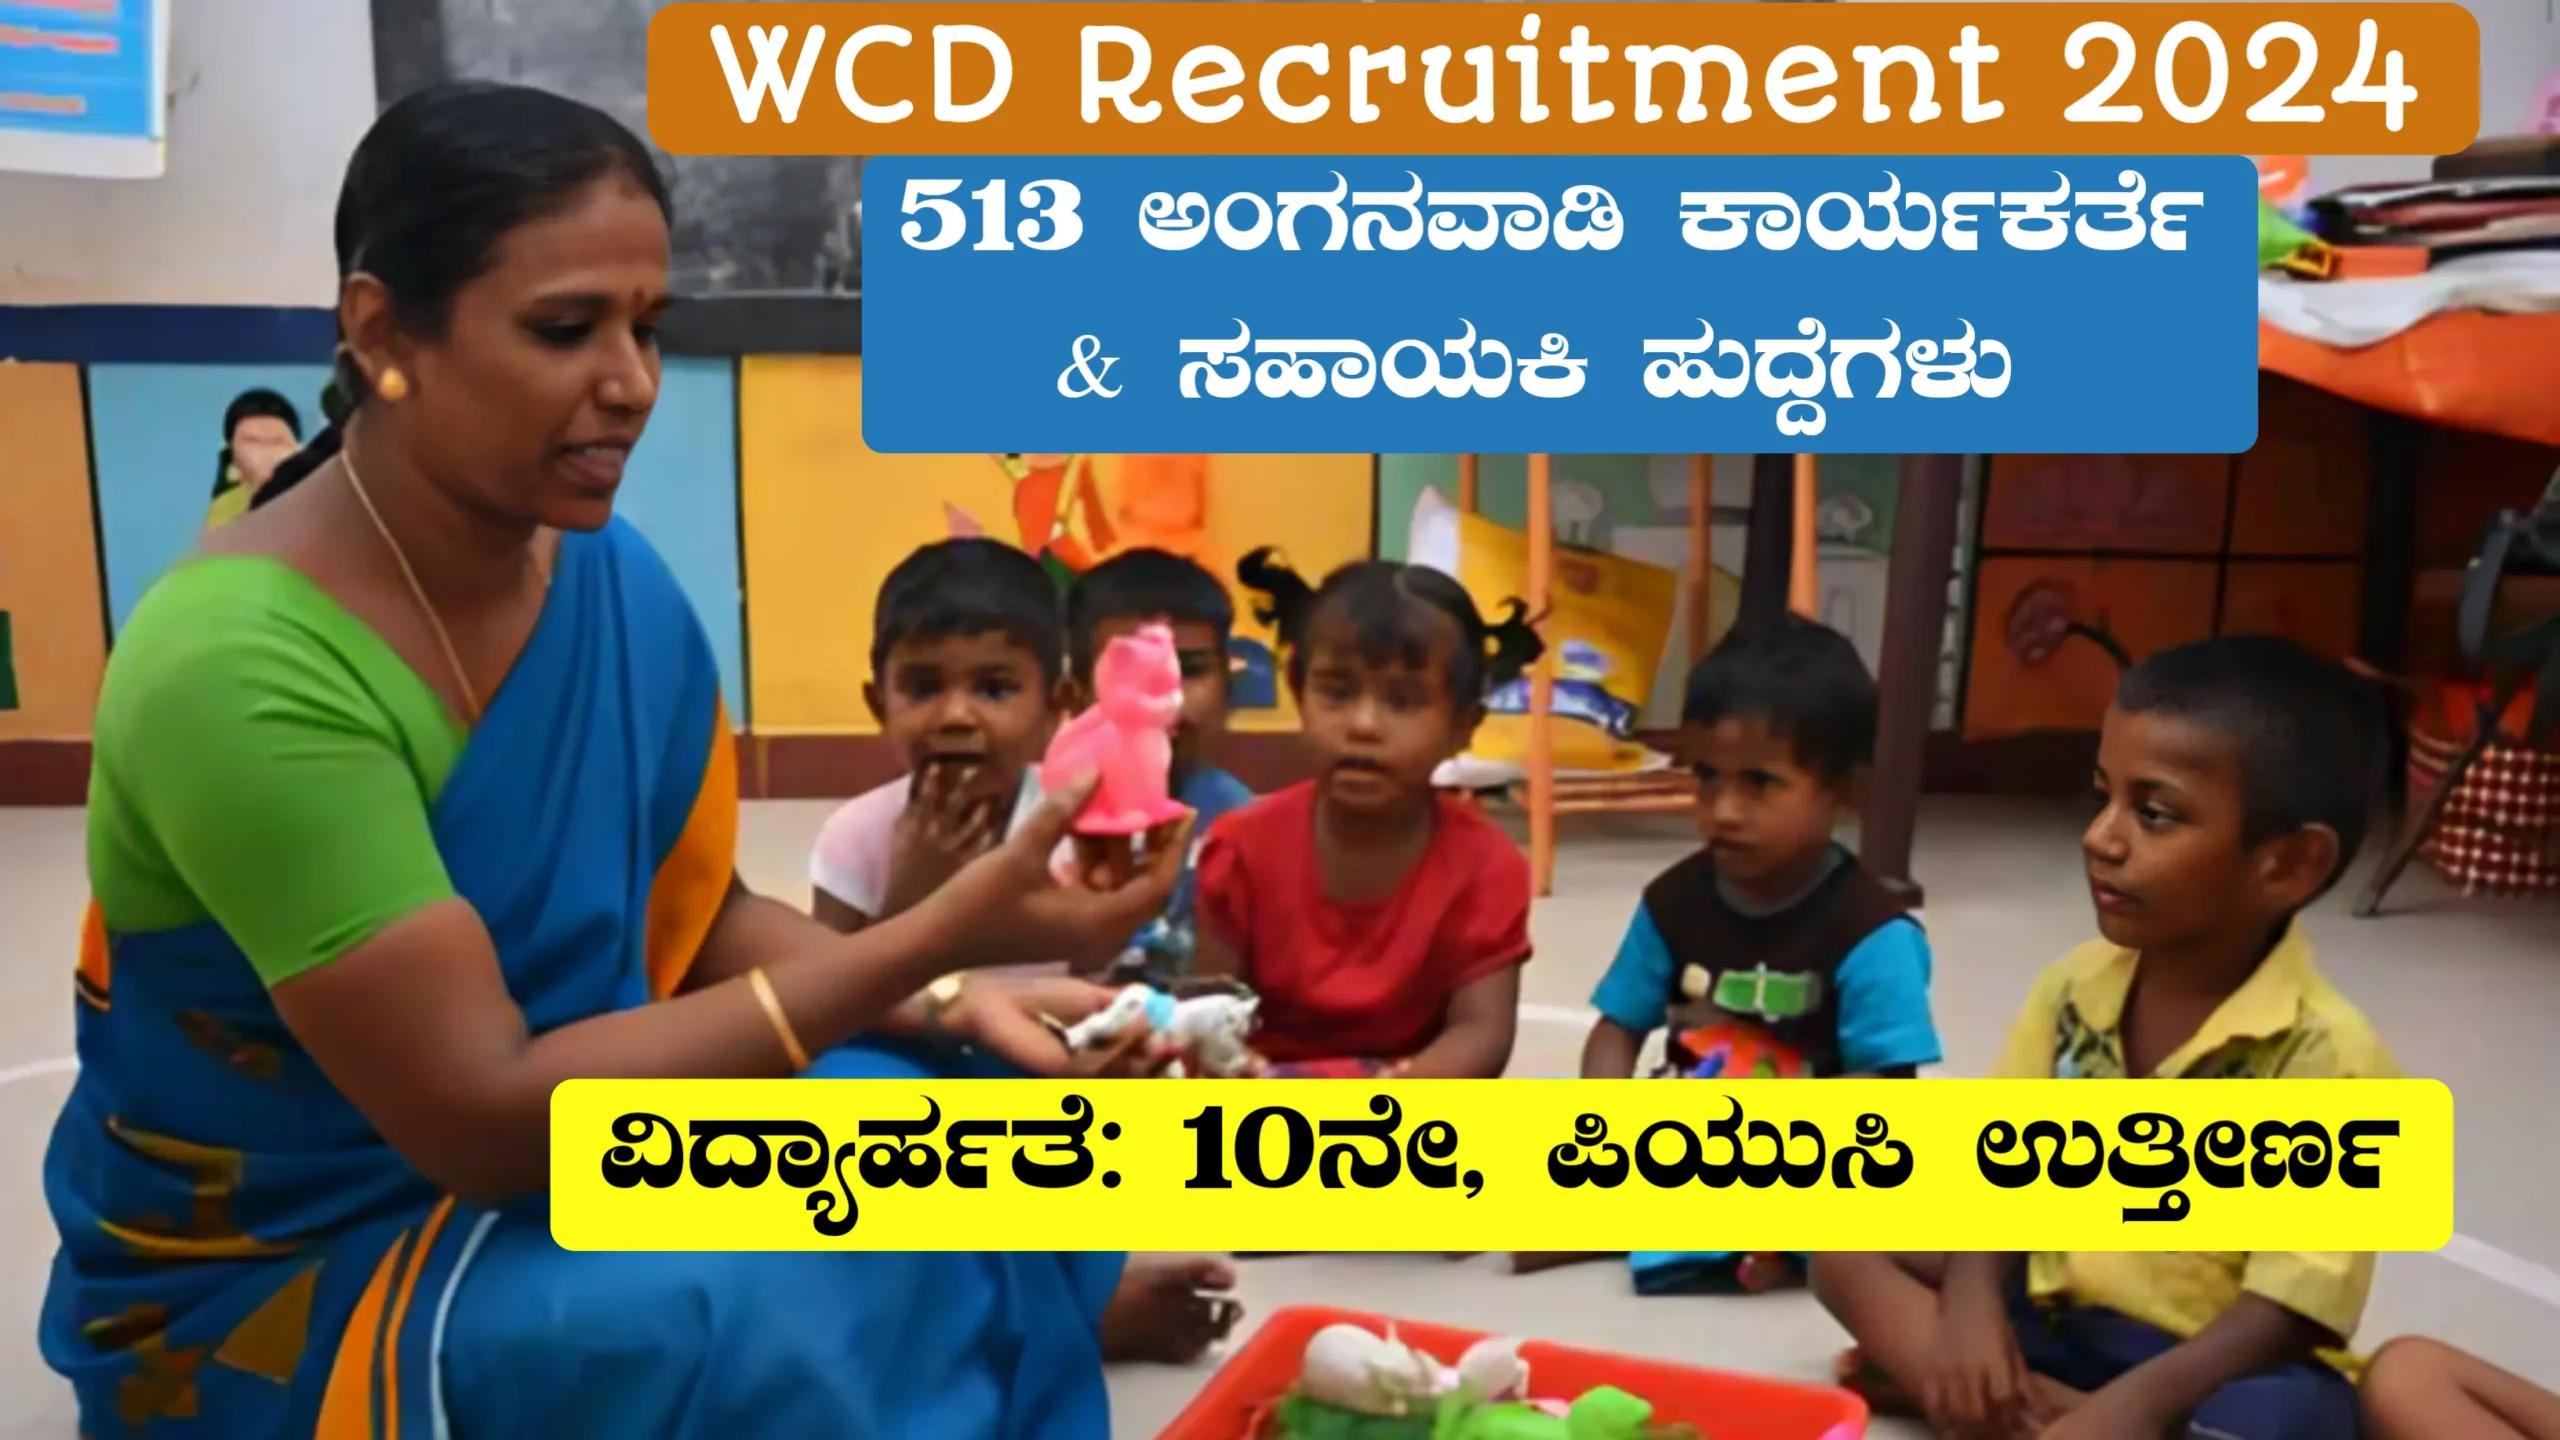 ಅಂಗನವಾಡಿ ಕಾರ್ಯಕರ್ತೆ ಮತ್ತು ಸಹಾಯಕಿ ನೇಮಕಾತಿ || WCD Recruitment 2024